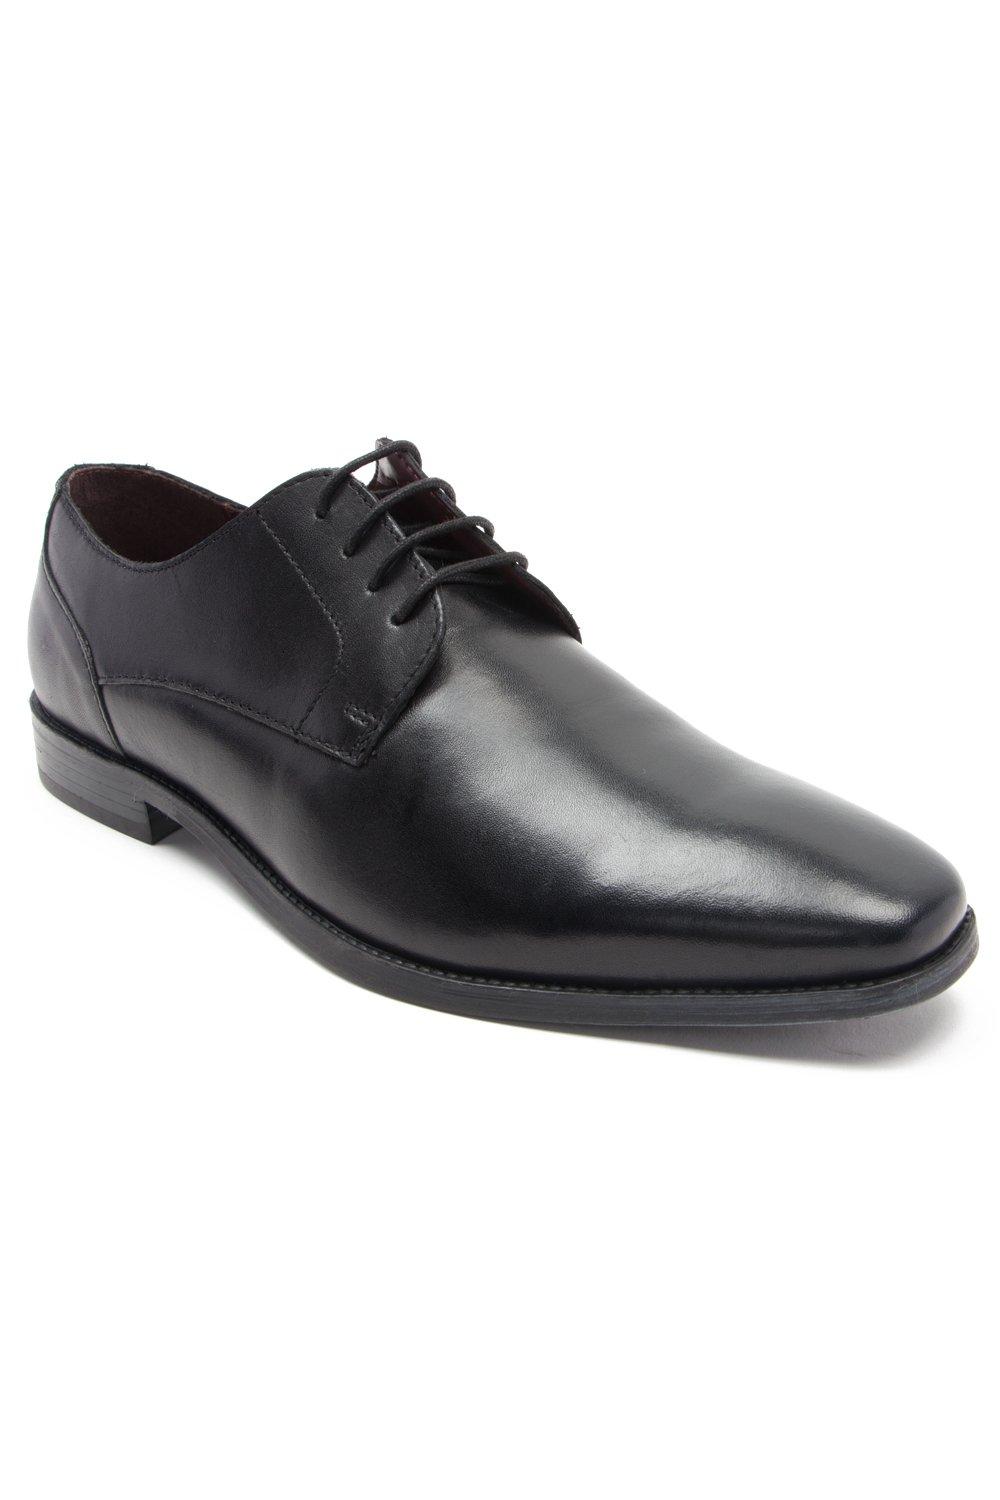 Формальные кожаные туфли дерби на шнуровке 'Falcon' Thomas Crick, черный туфли оксфорды мужские деловые из натуральной кожи